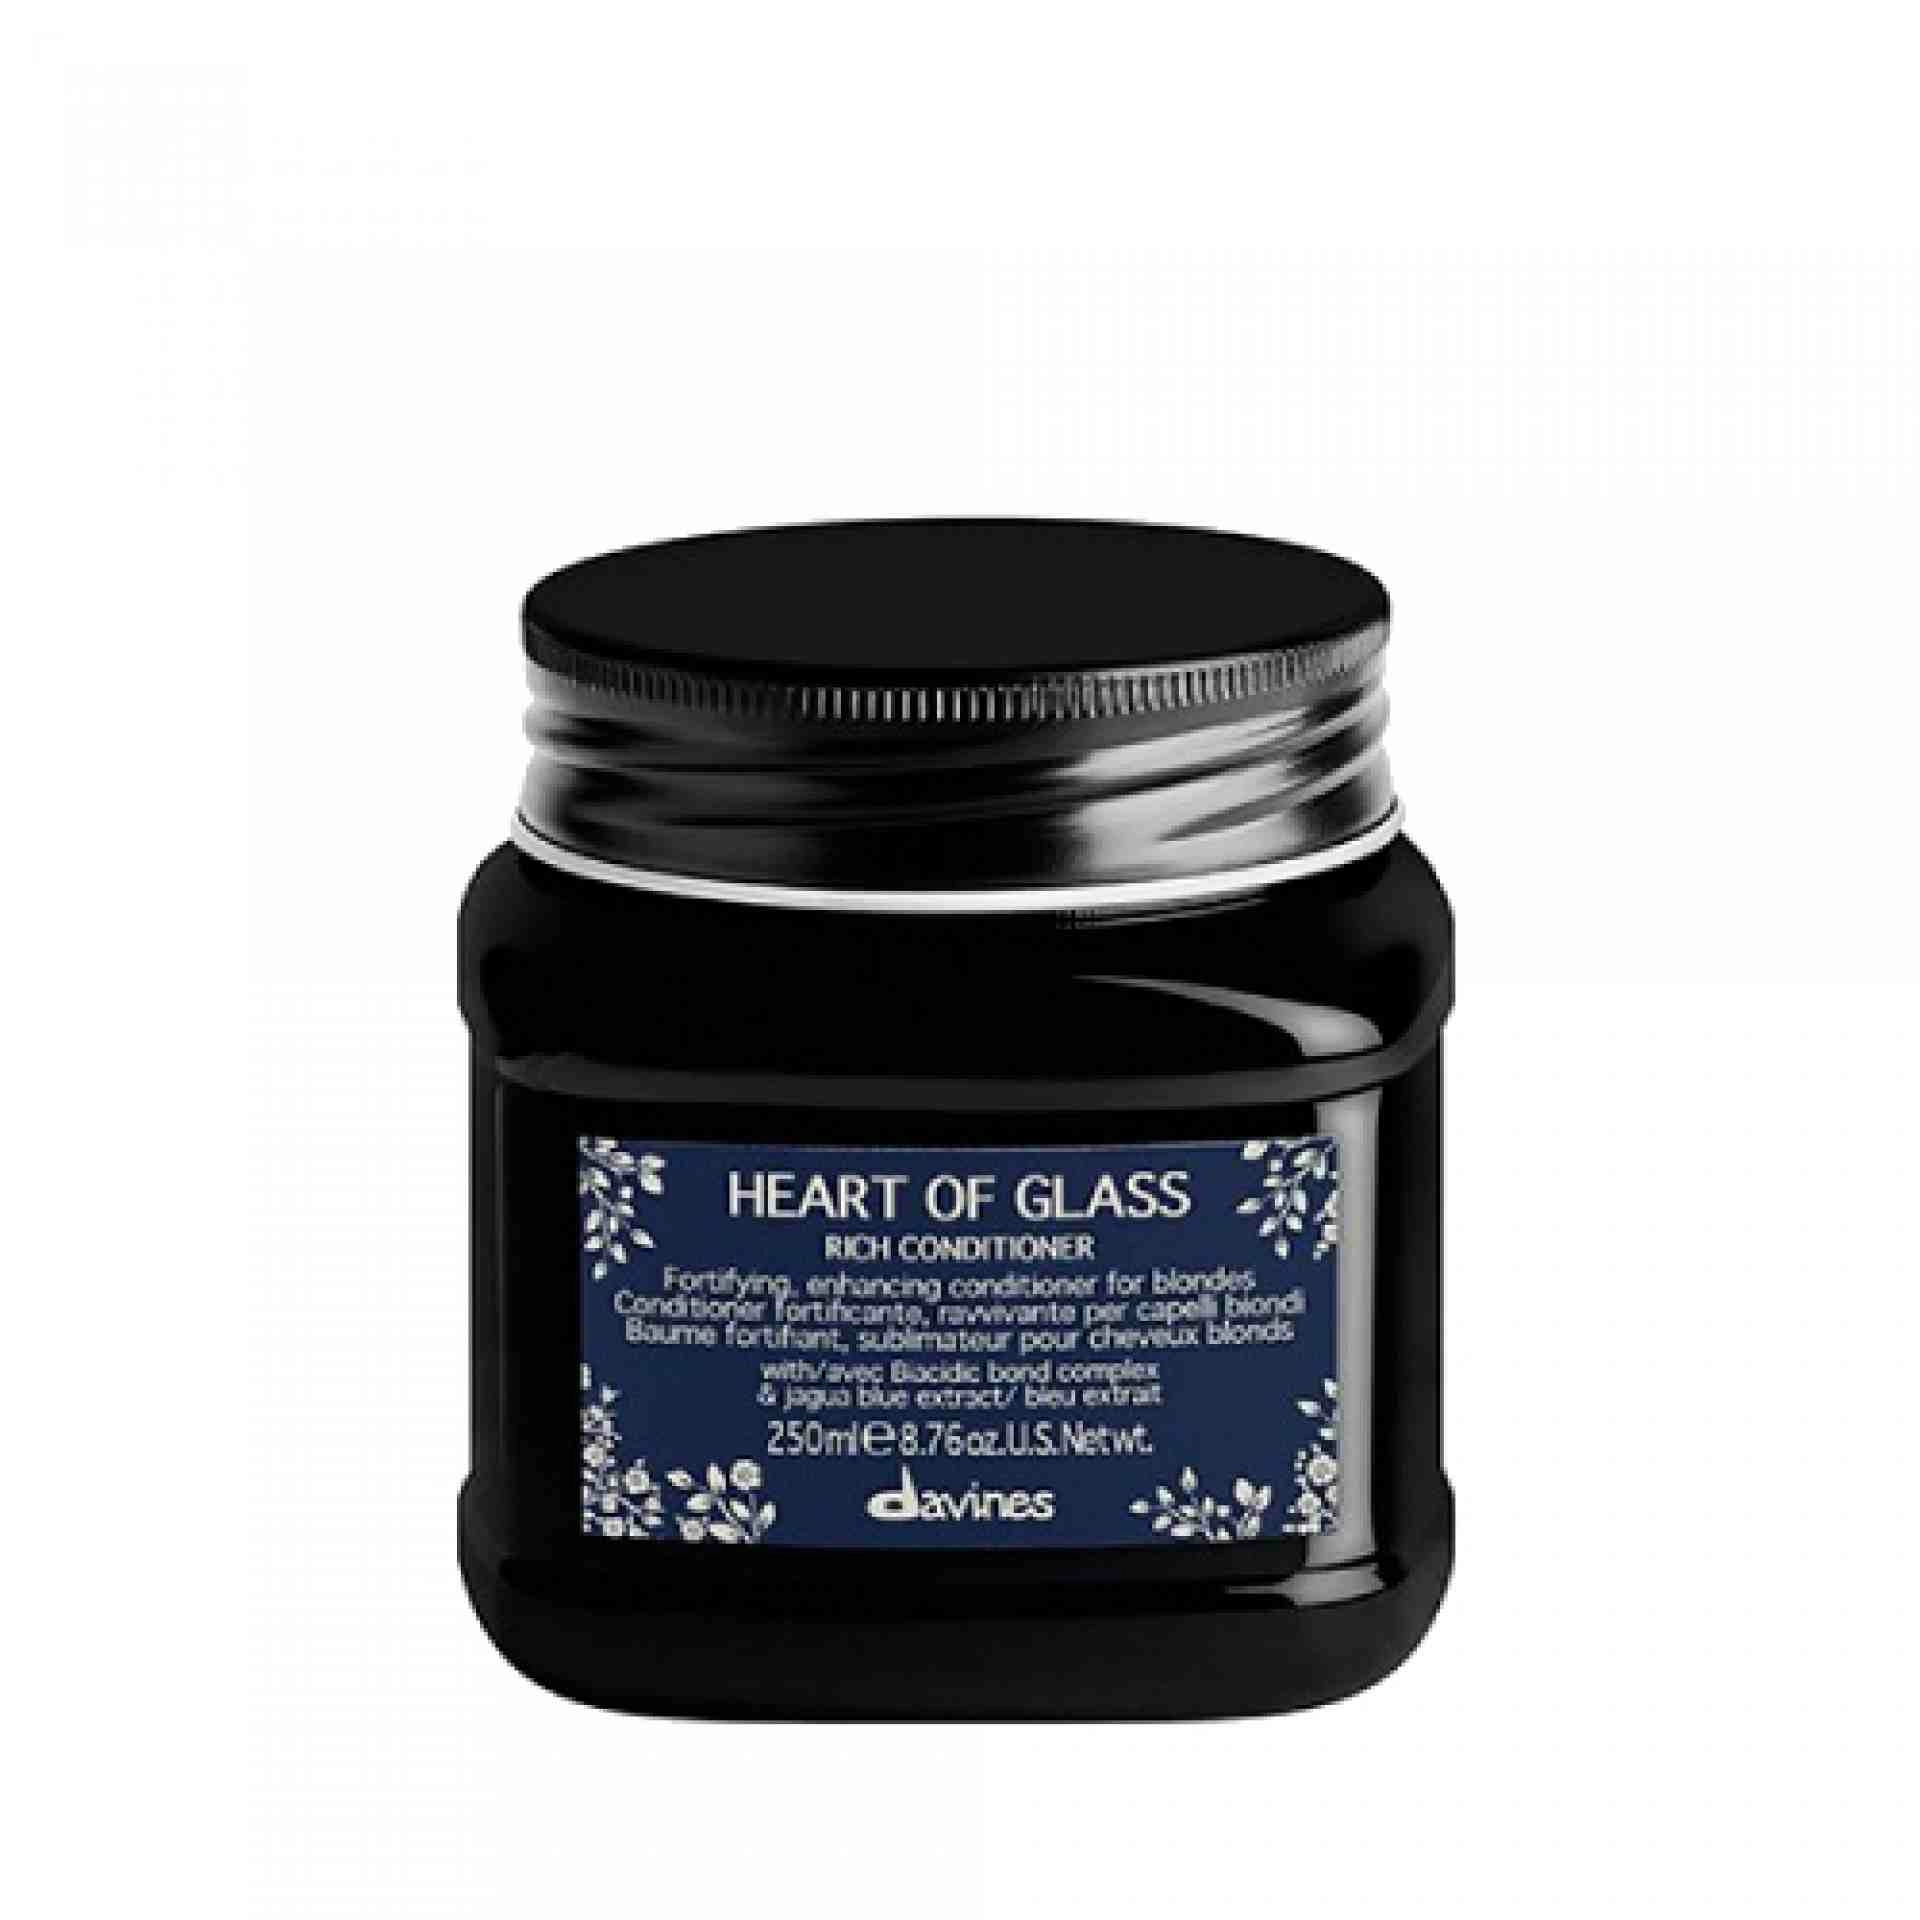 Rich Conditioner | Acondicionador revitalizante - Heart of Glass - Davines ®